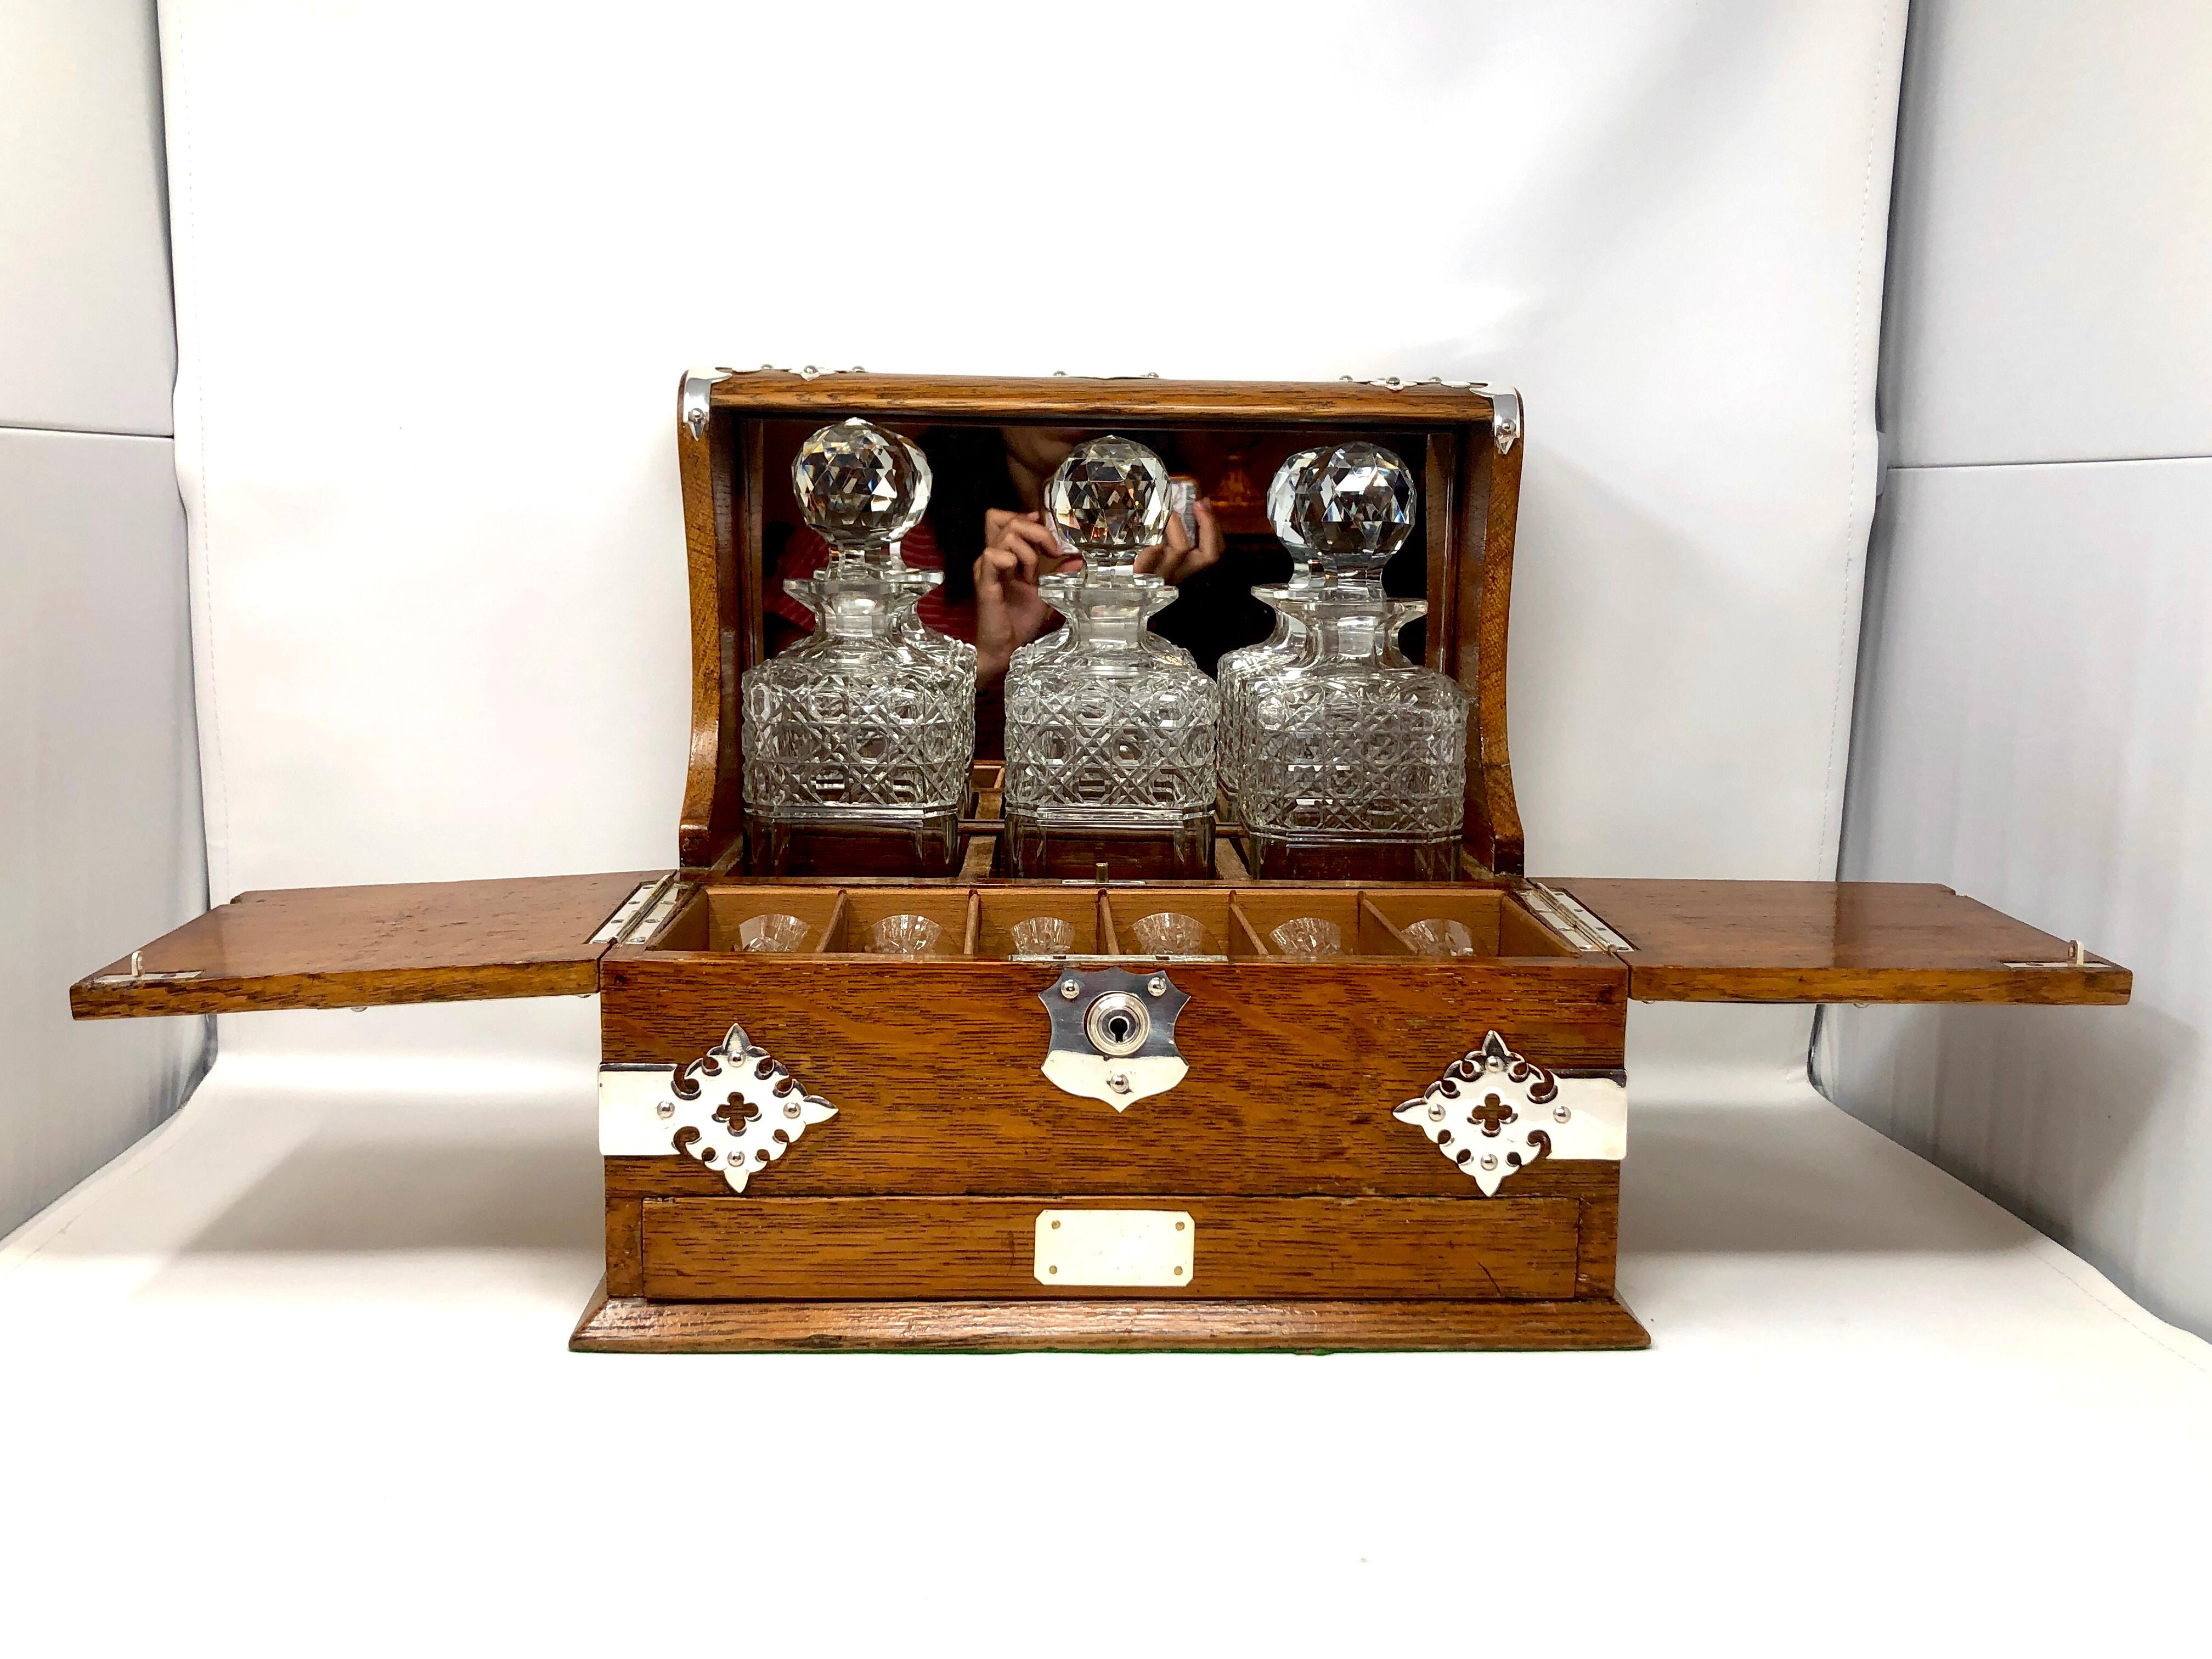 Antique English 3 bottle tantalus and games box compendium, Circa 1875-1885.